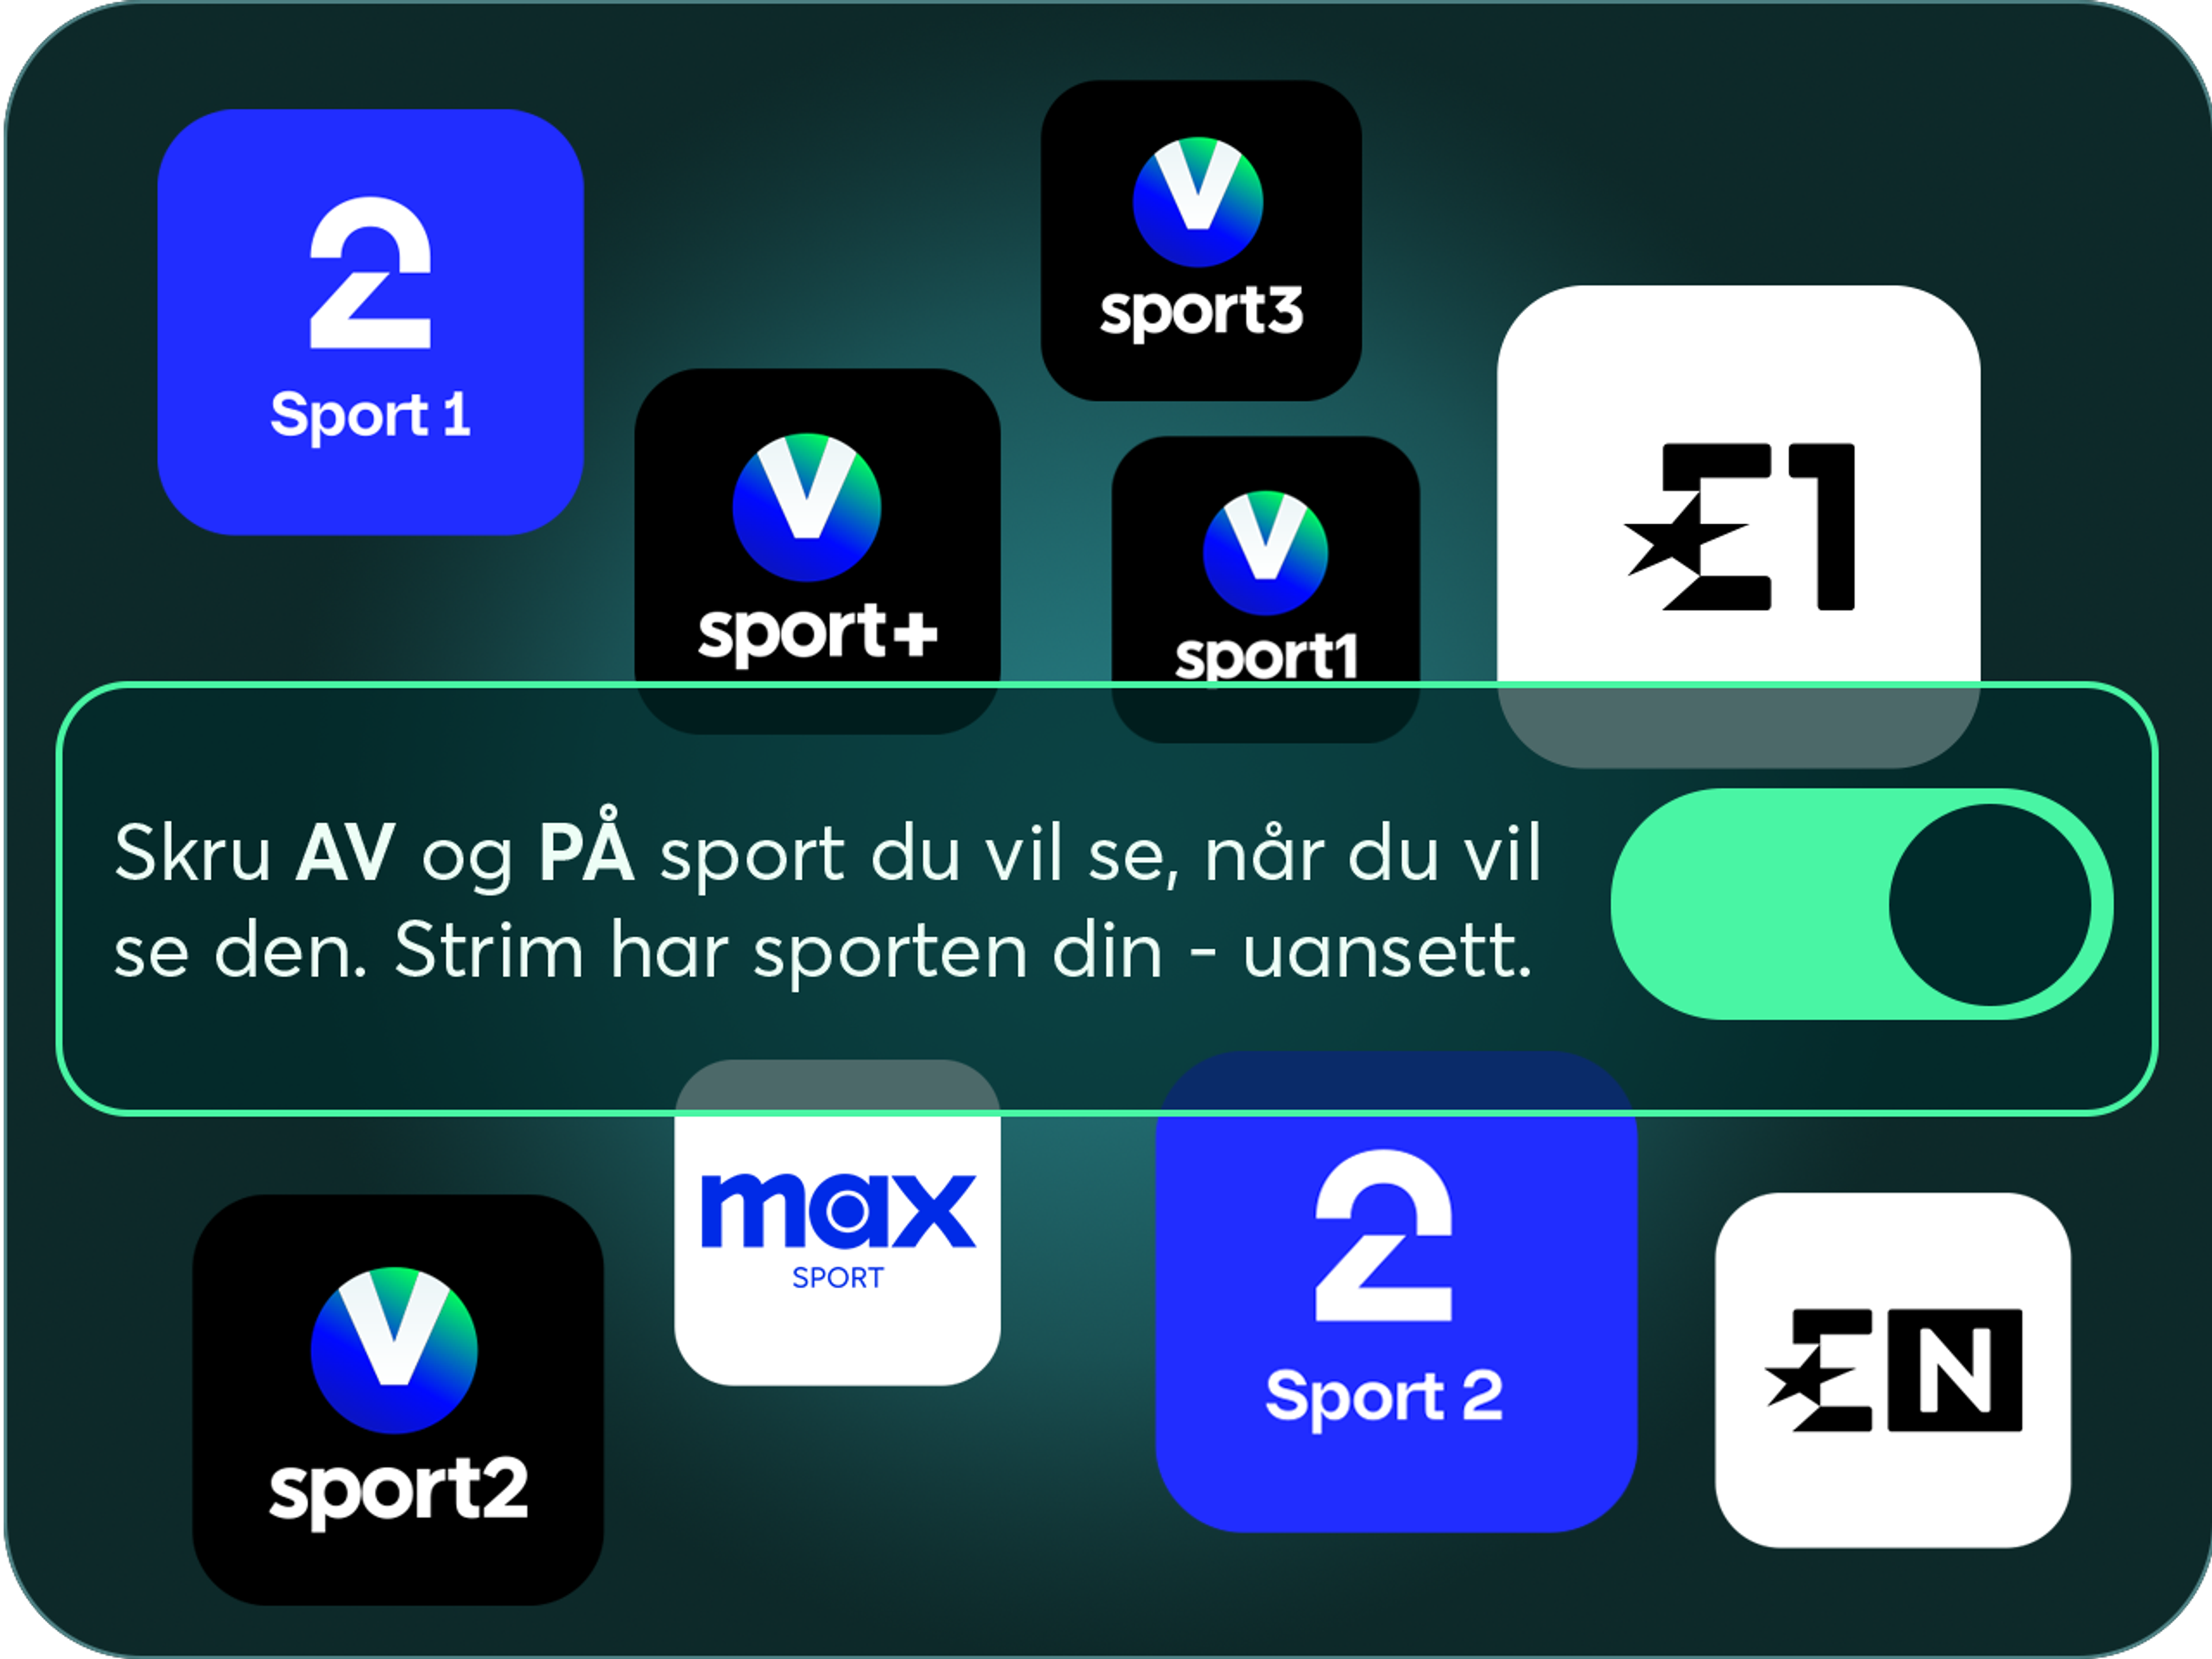 Bilde. 9 sportskanaler på grønn bakgrunn med tekst som sier at du enkelt kan slå av og på sporten din med Strim.